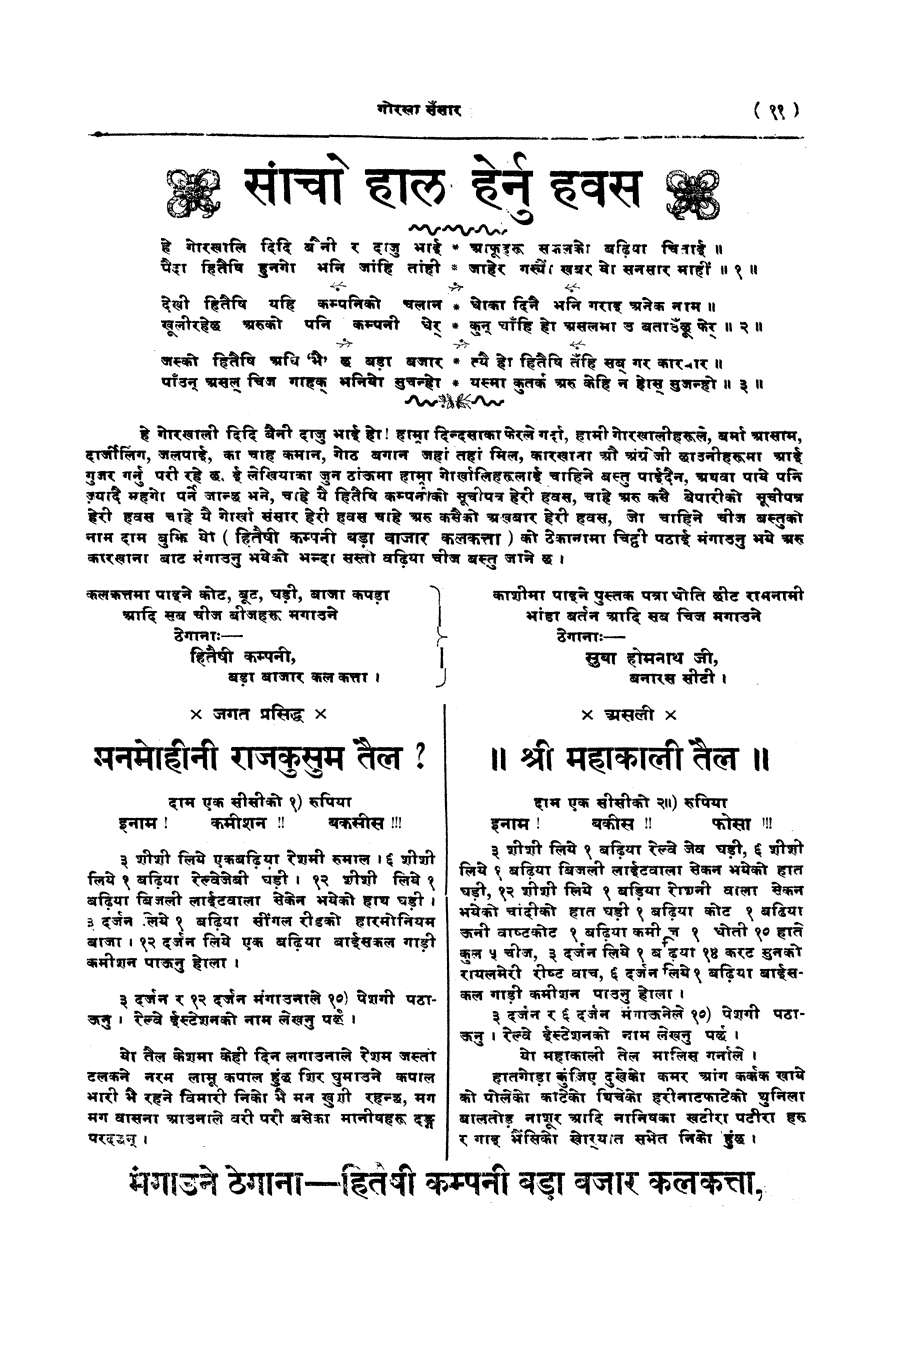 Gorkha Sansar, 31 Jan 1928, page 11